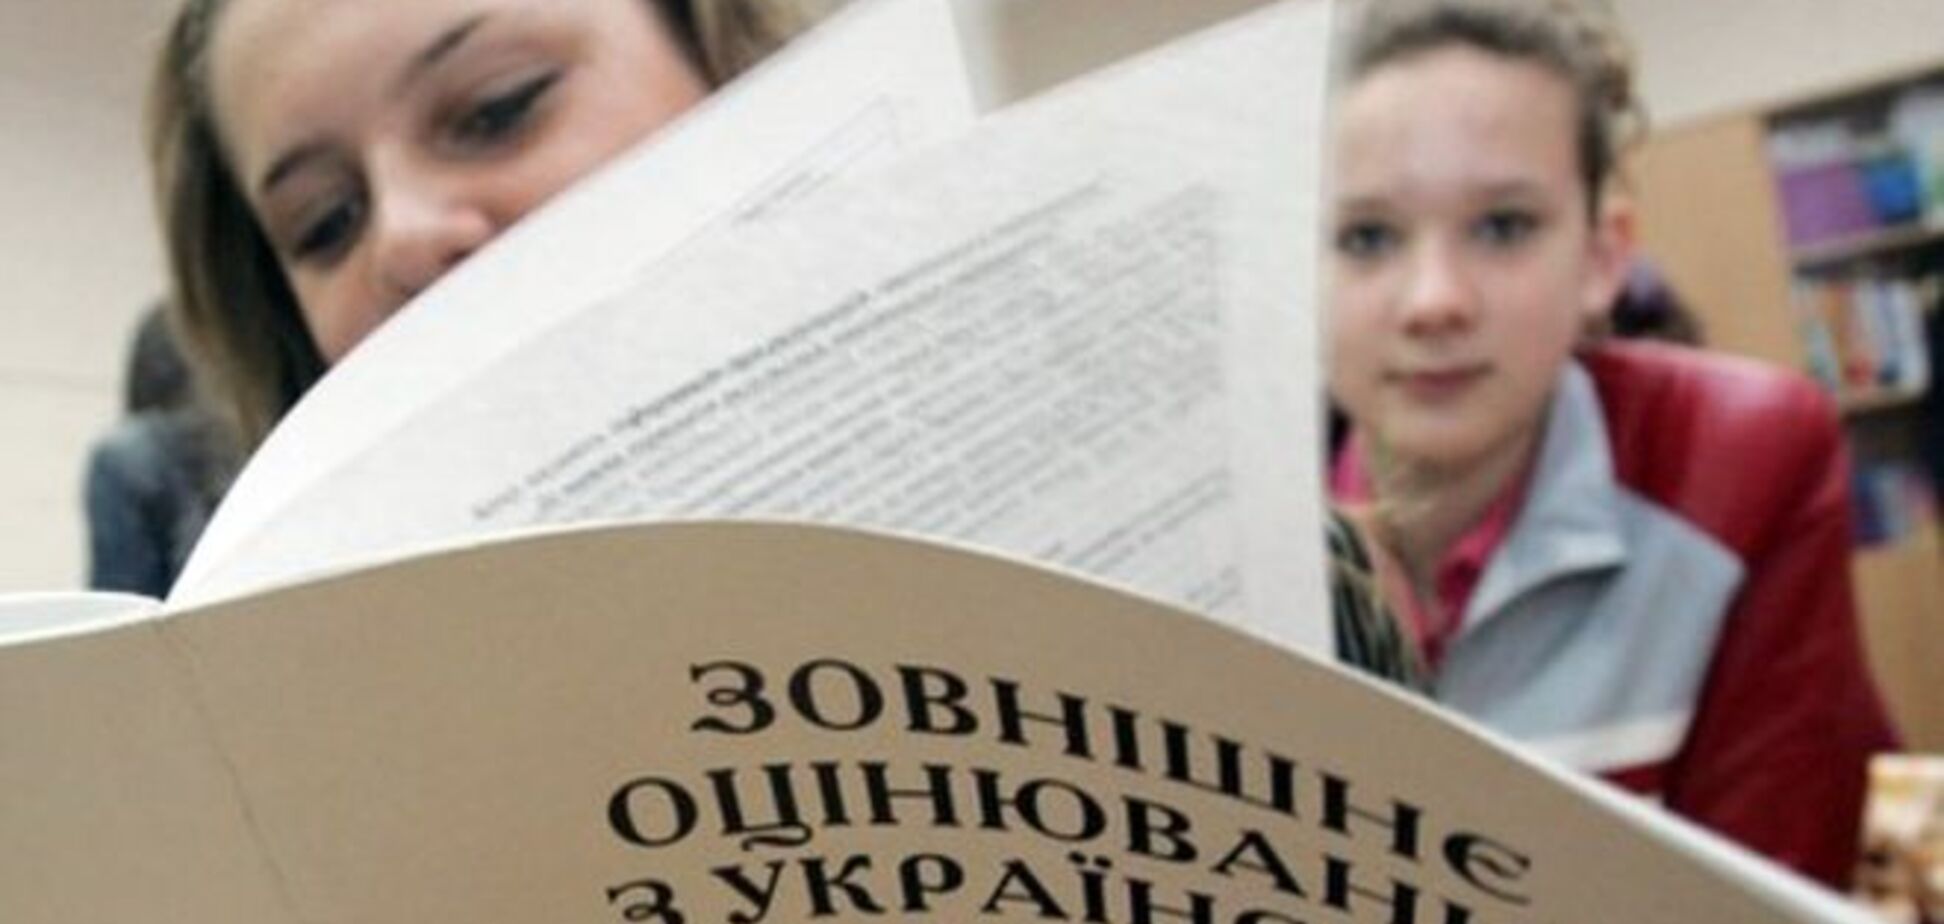 'Чужий ідіотизм!' Батьки українських школярів влаштували суперечку через ЗНО